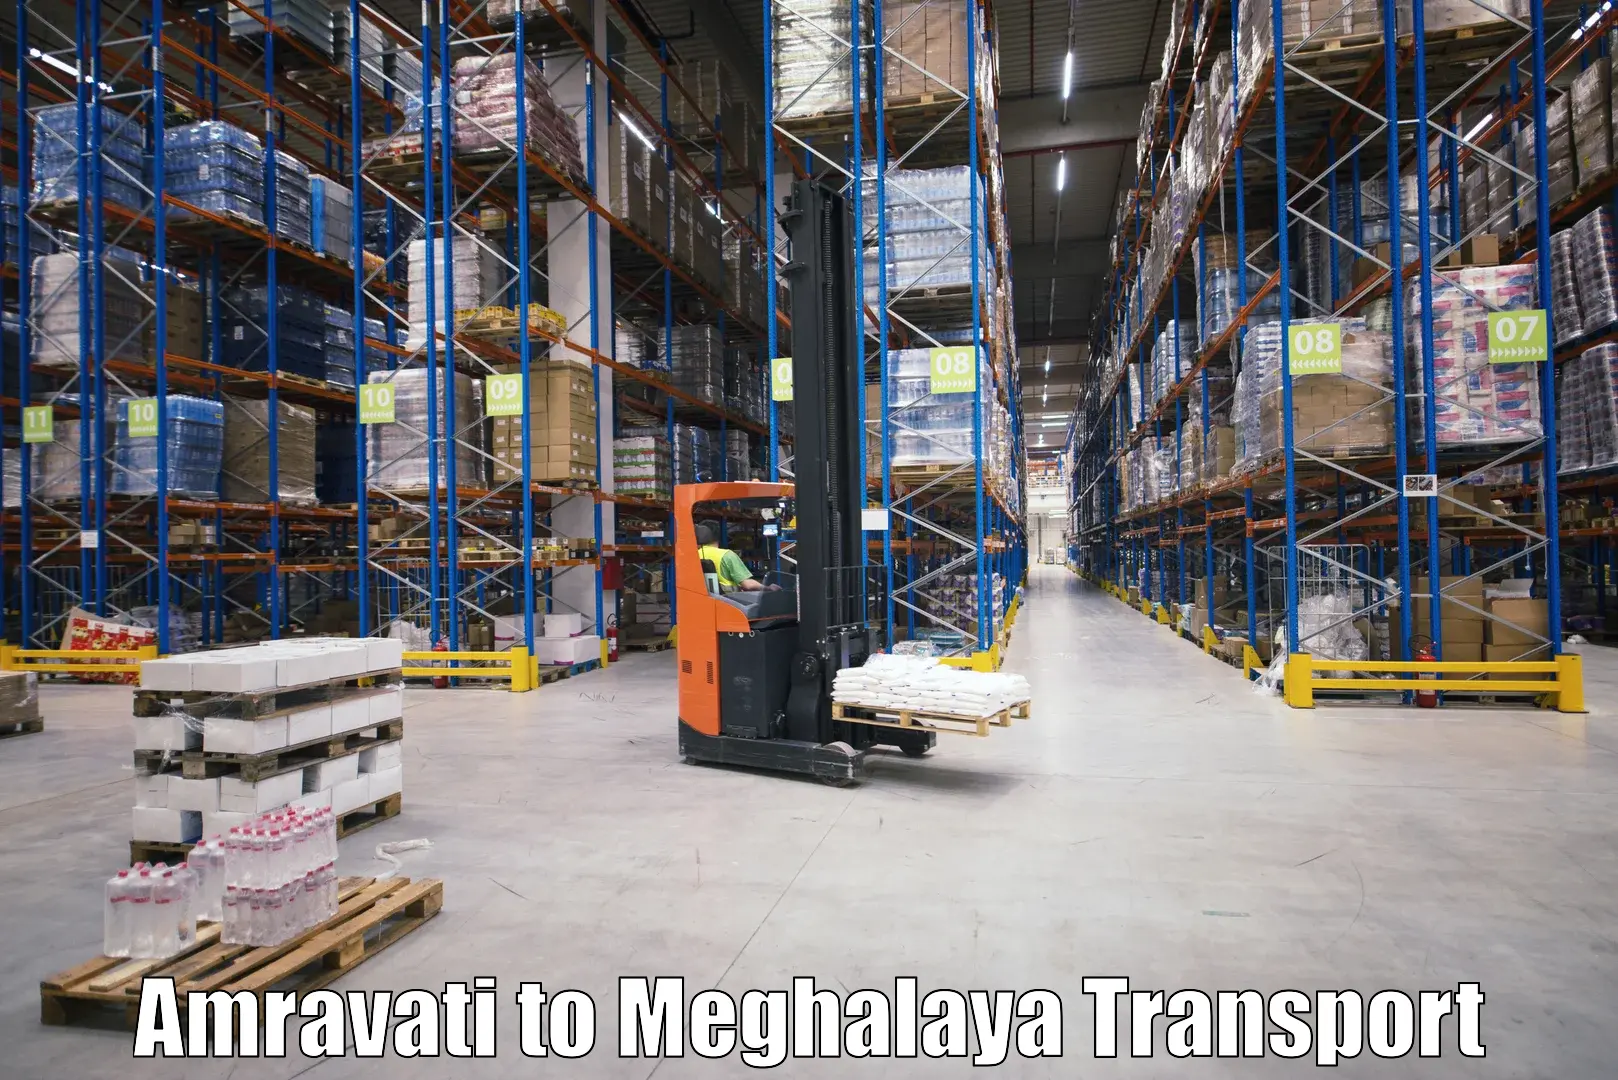 Daily parcel service transport Amravati to Meghalaya